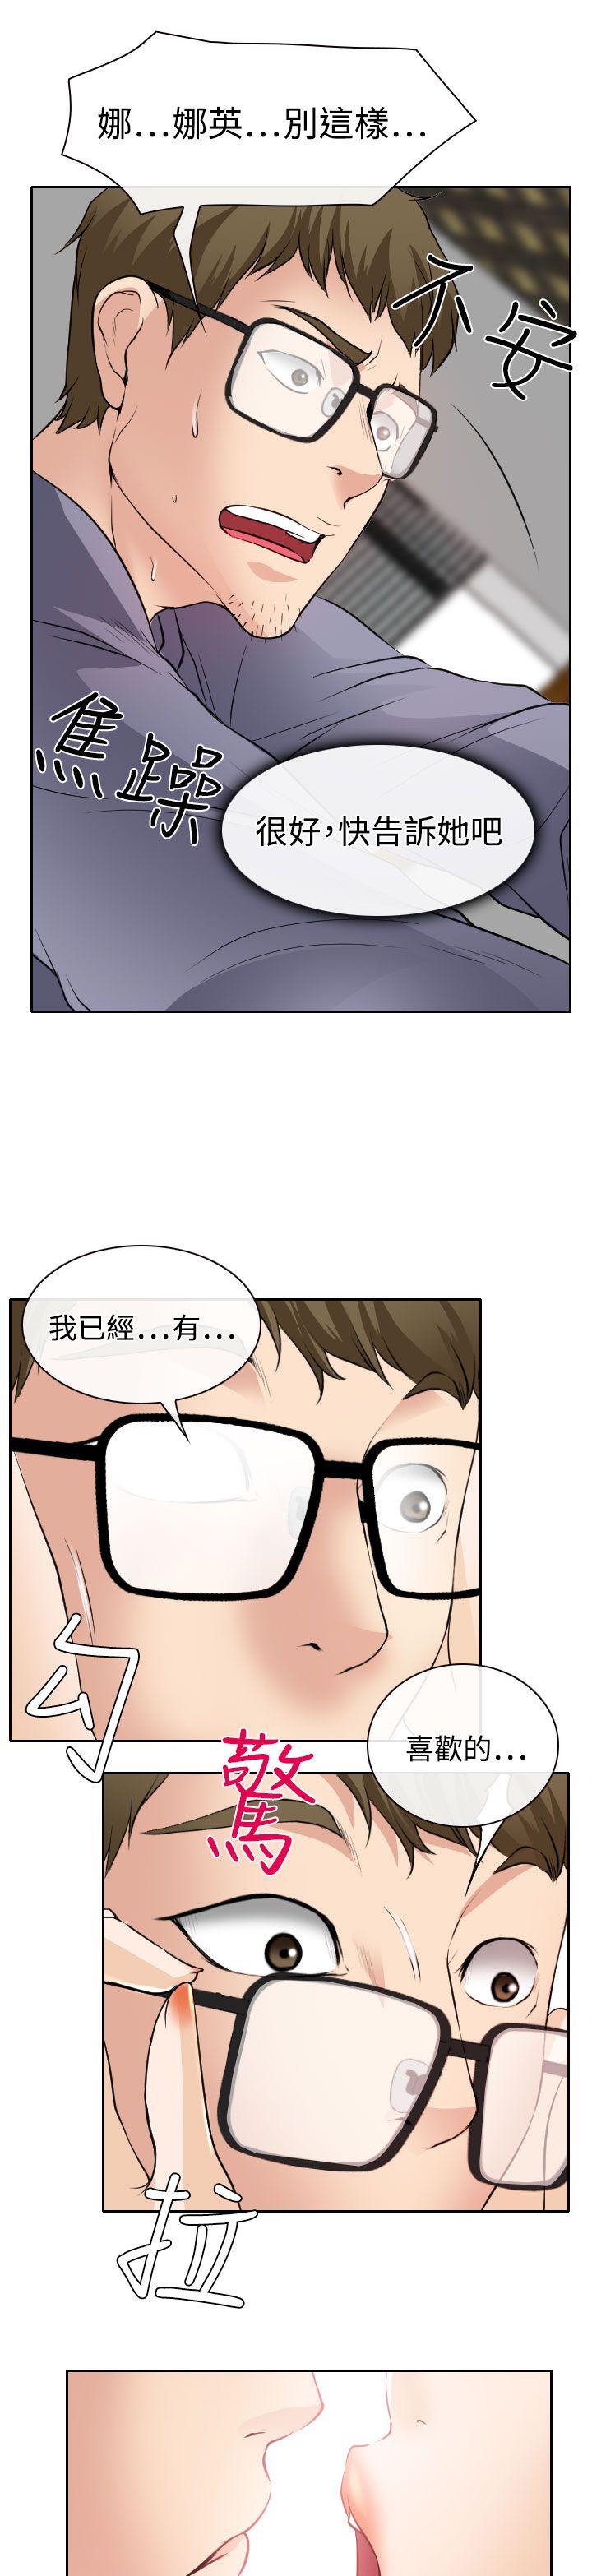 韩国污漫画 低速男高速女 第19话 29